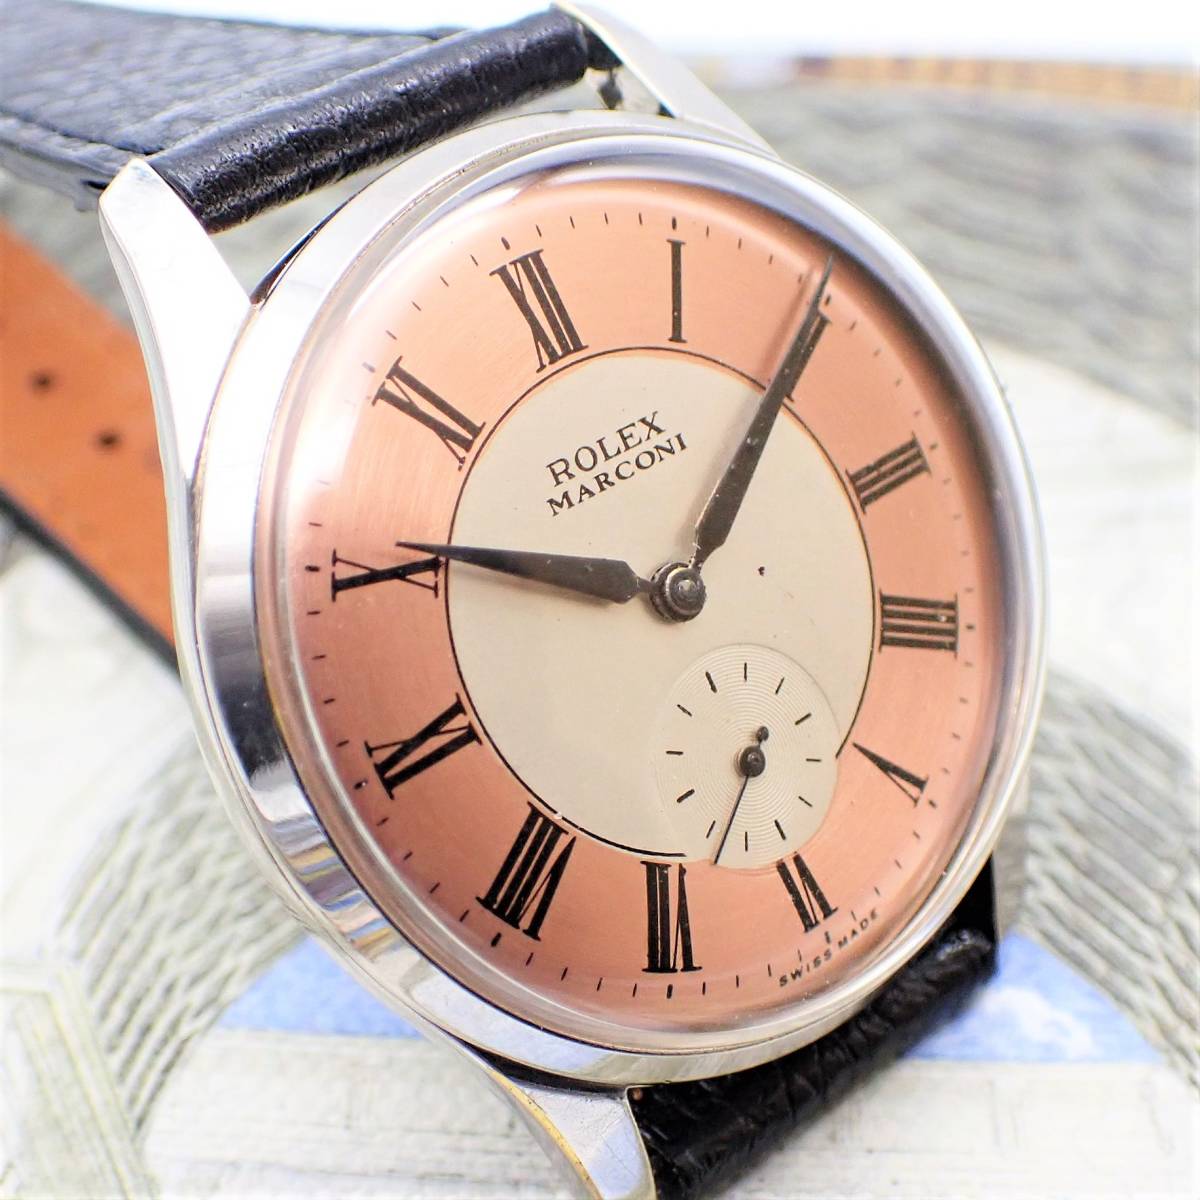 ROLEX ロレックス MARCONI マルコーニ ステンレススチール 1910 サイズ 38ｍｍ アンティーク・ウォッチ メンズ 腕時計 手巻き #205_画像2